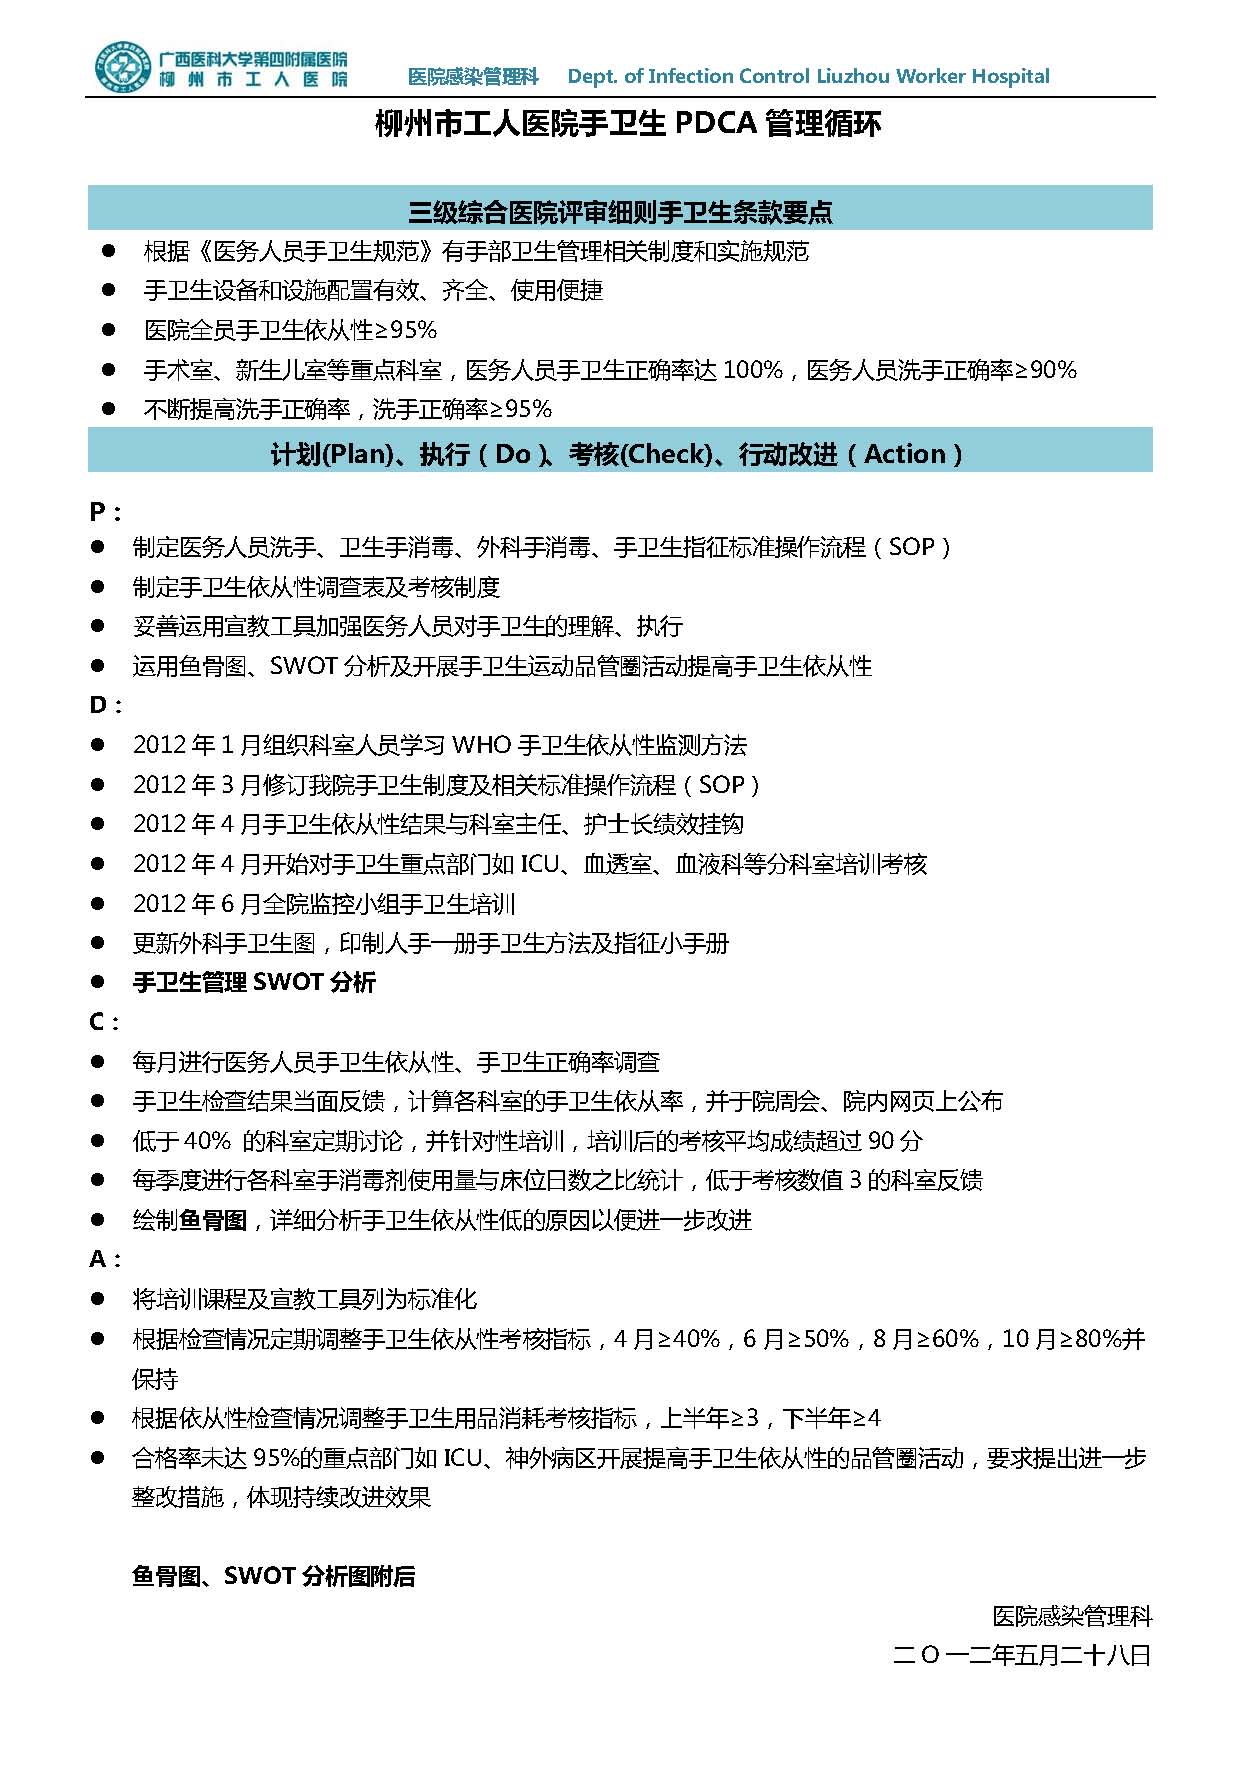 20120528 柳州市工人医院手卫生管理PDCA_页面_1.jpg